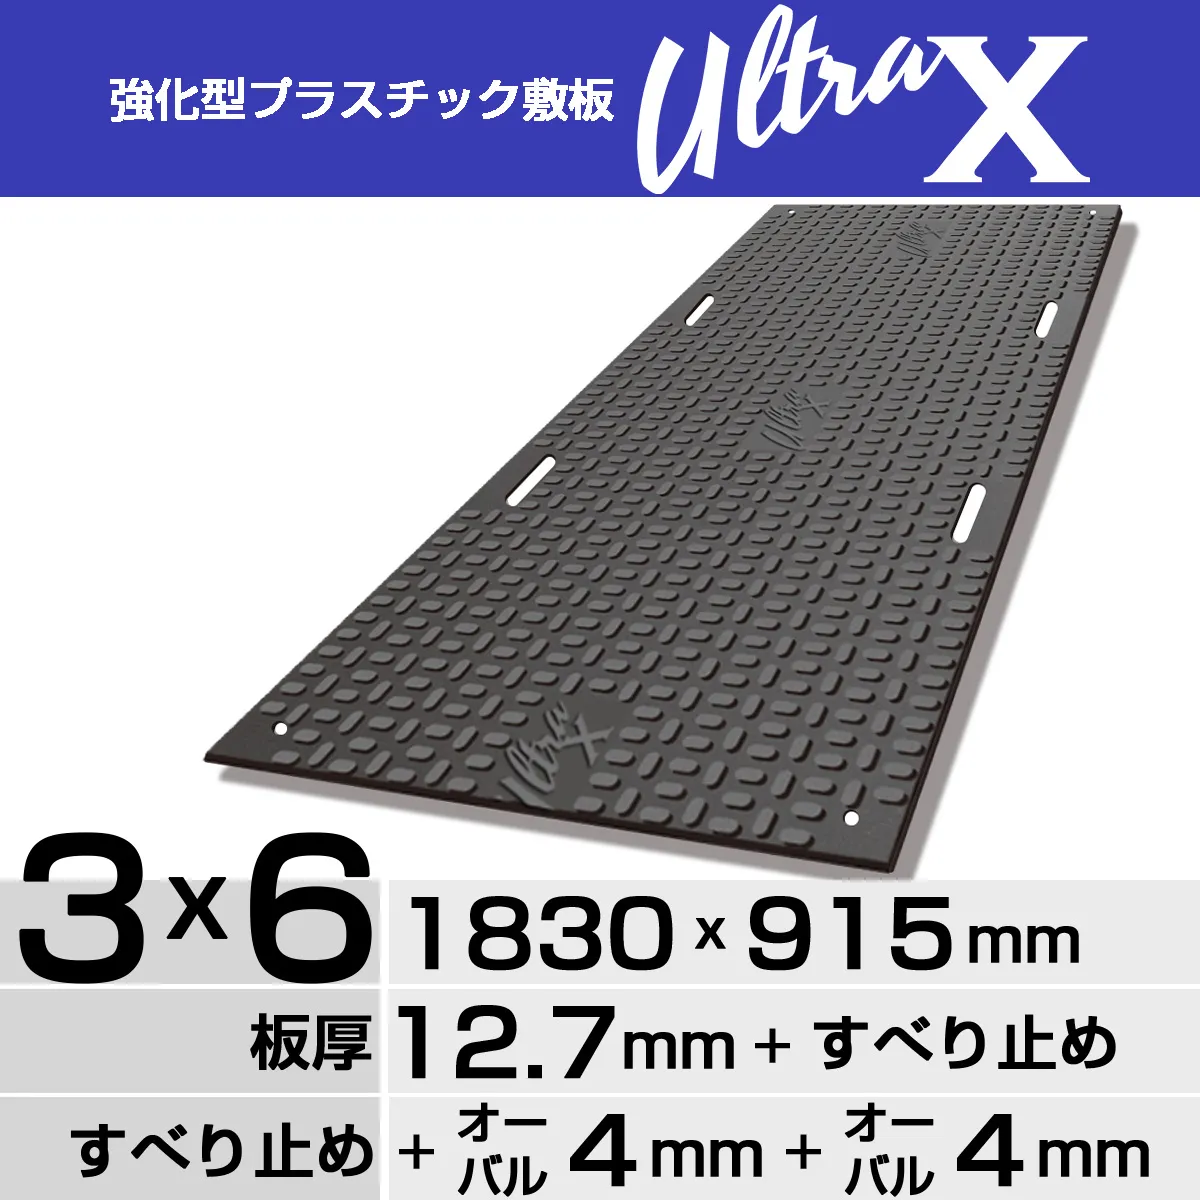 強化型プラスチック敷板UltraX３x６両面オーバル